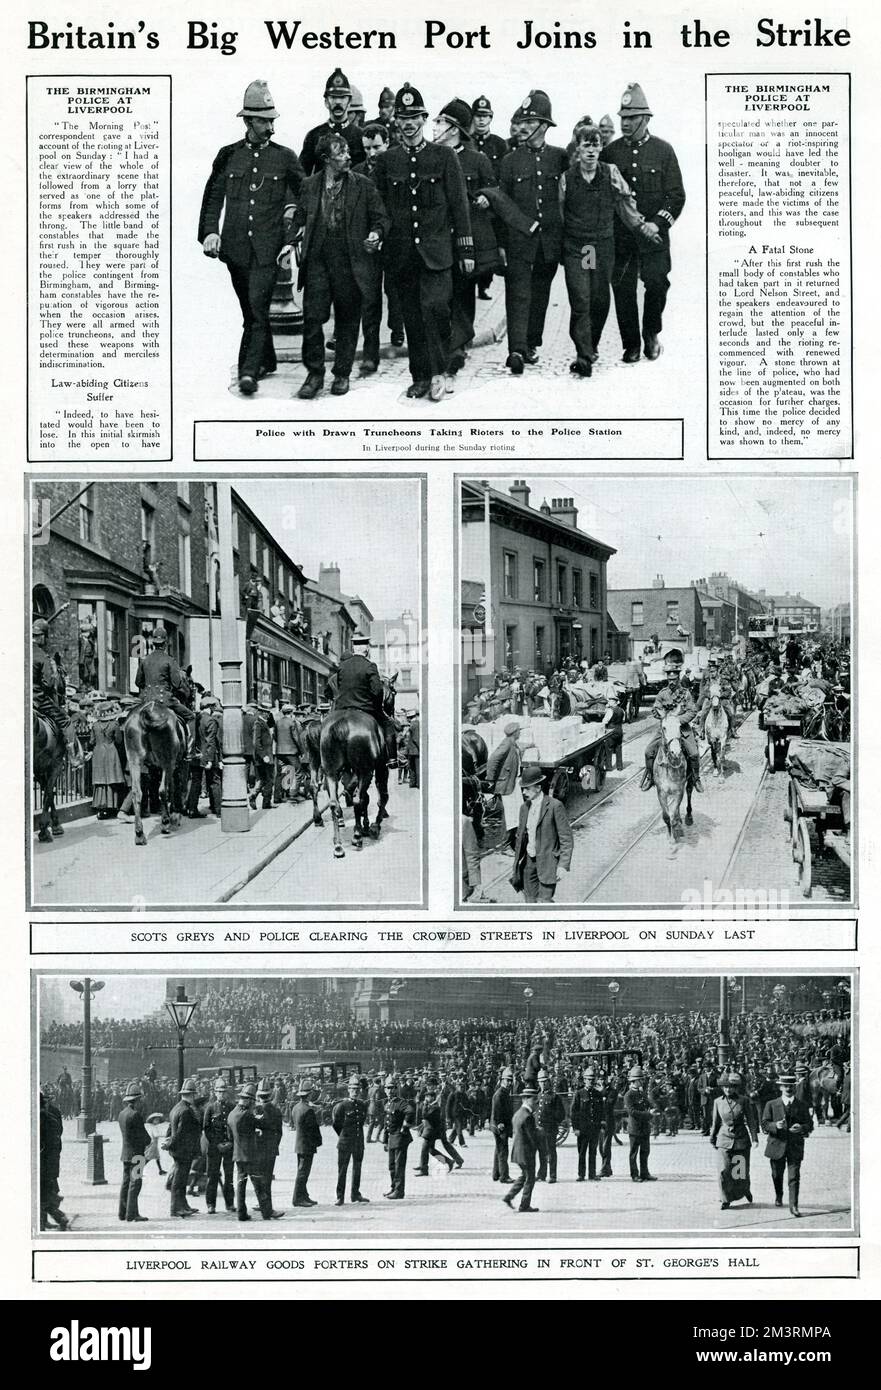 Den größten Teil des Sommers 1911 streikten Hafenarbeiter, Bahnarbeiter und Seeleute sowie Menschen aus anderen Berufen, was Liverpools Handel lähmte. Die Transformation von Gewerkschaften und Merseyside. Zum ersten Mal bilden sich die Gewerkschaften zu Massenorganisationen der Arbeiterklasse. Fotos von festgenommenen Männern, Straßenszenen in Liverpool, wo die berittene Polizei versucht, überfüllte Demonstranten in Schach zu halten, und schließlich Tausende von Streikenden rund um die St. George's Hall. August 1911 Stockfoto